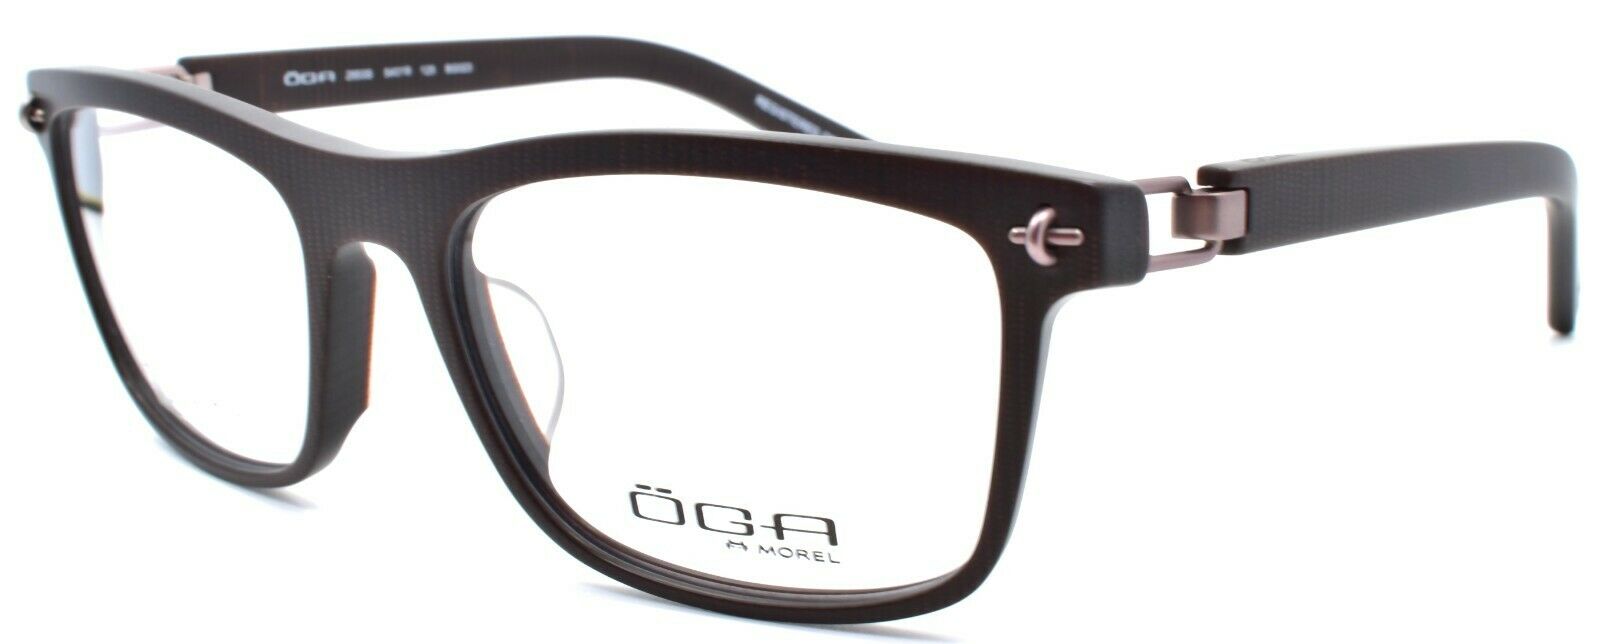 1-OGA by Morel 2953S BG023 Men's Eyeglasses Frames Asian Fit 54-18-125 Red-3604770890259-IKSpecs